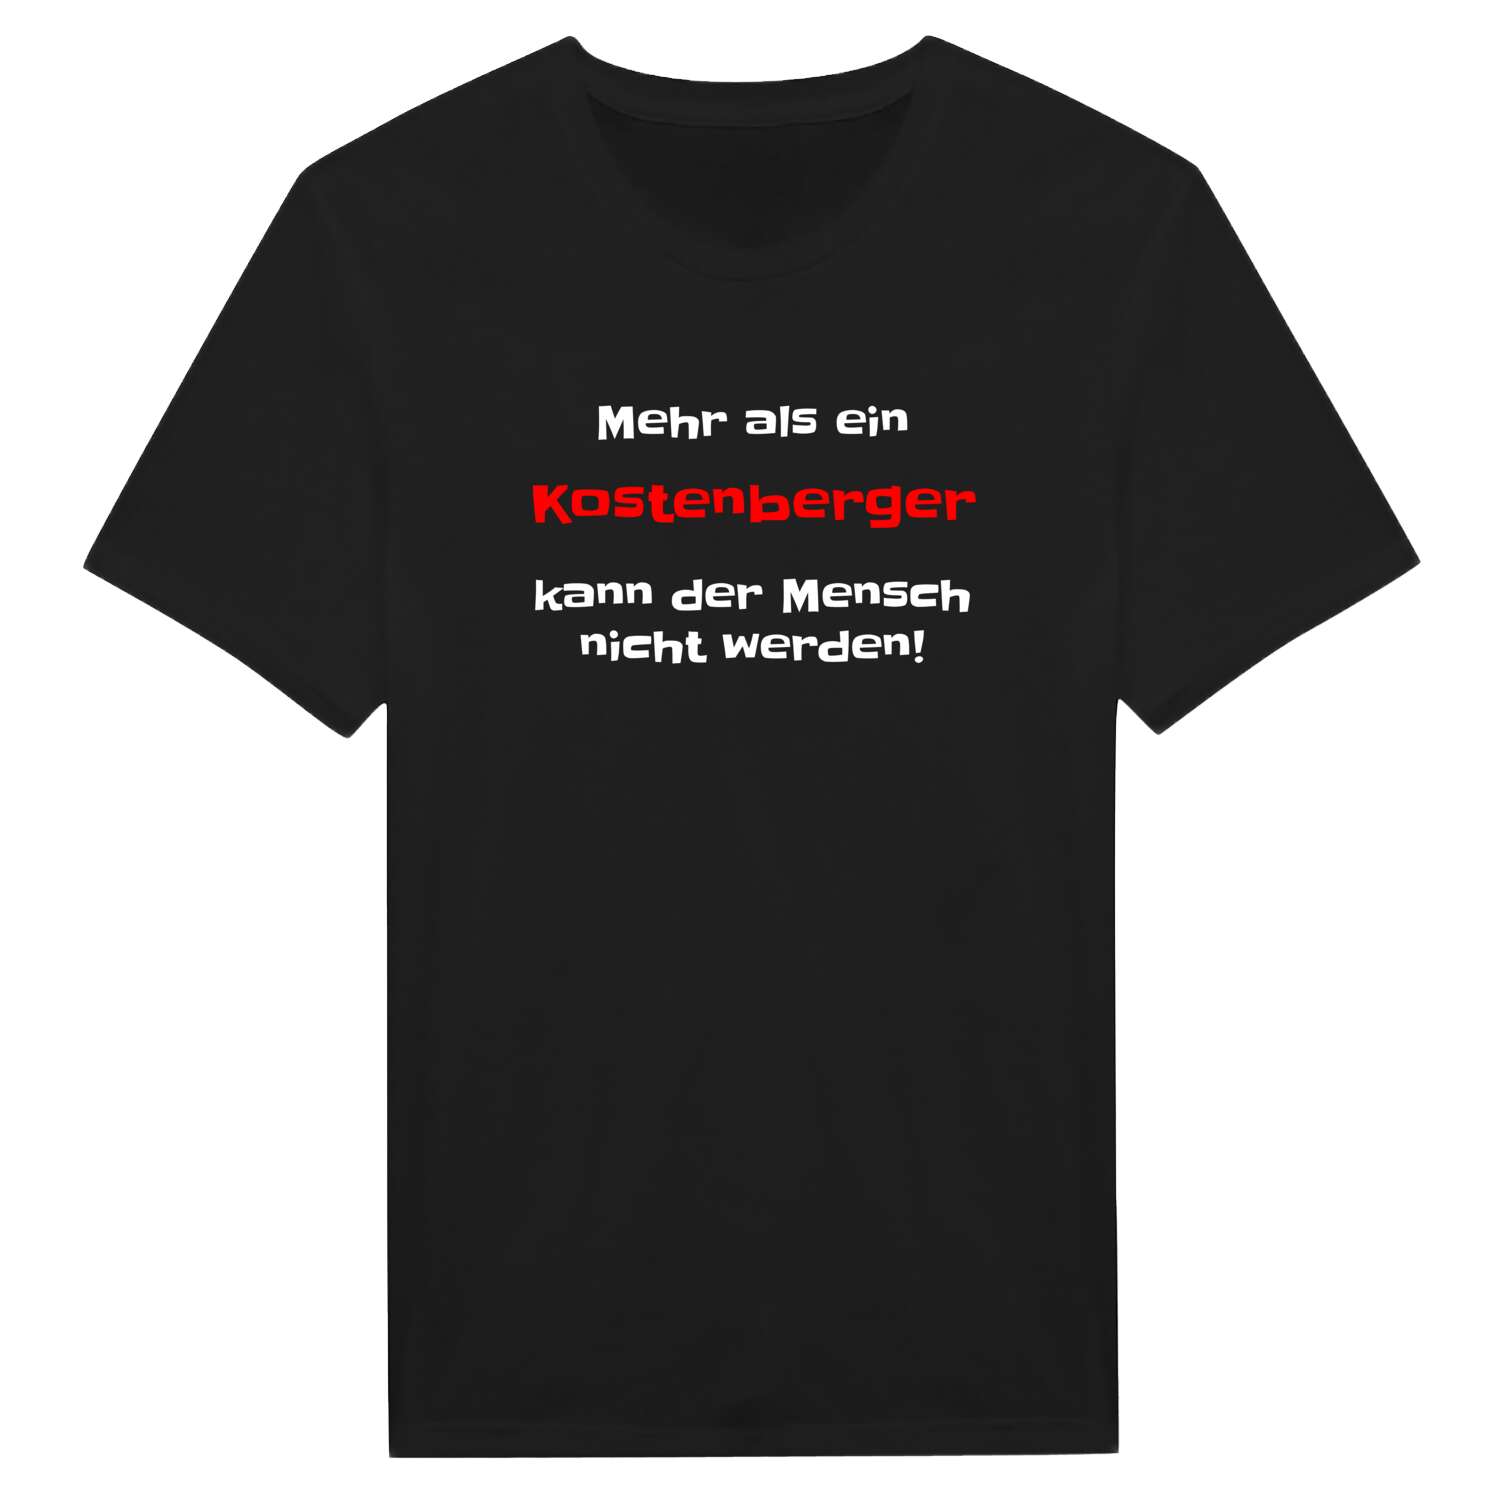 Kostenberg T-Shirt »Mehr als ein«